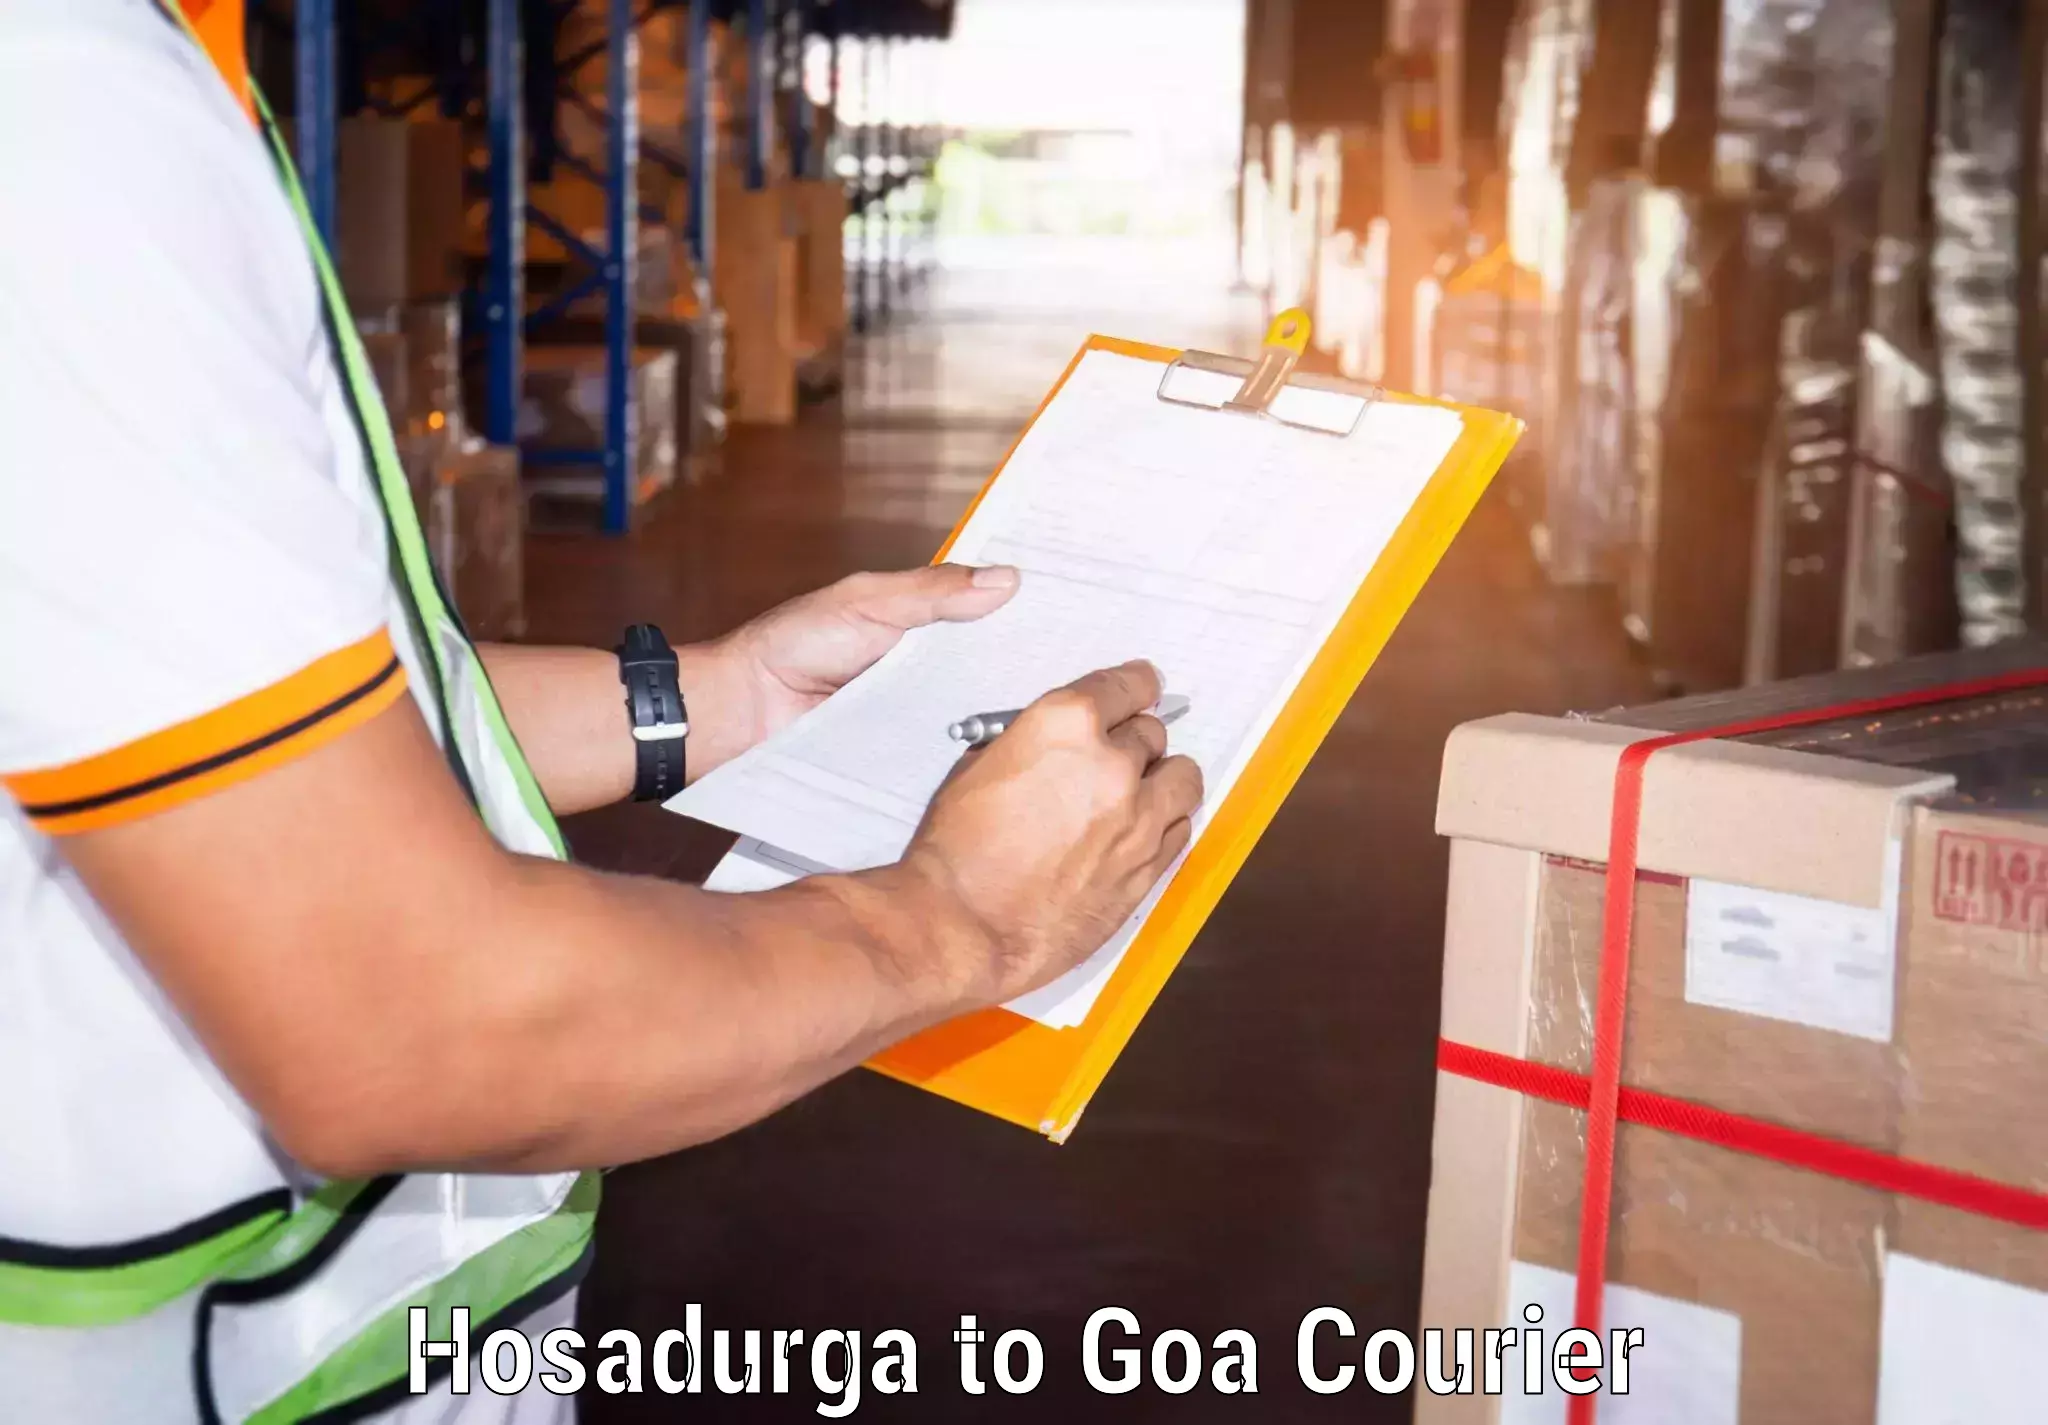 Global courier networks Hosadurga to NIT Goa